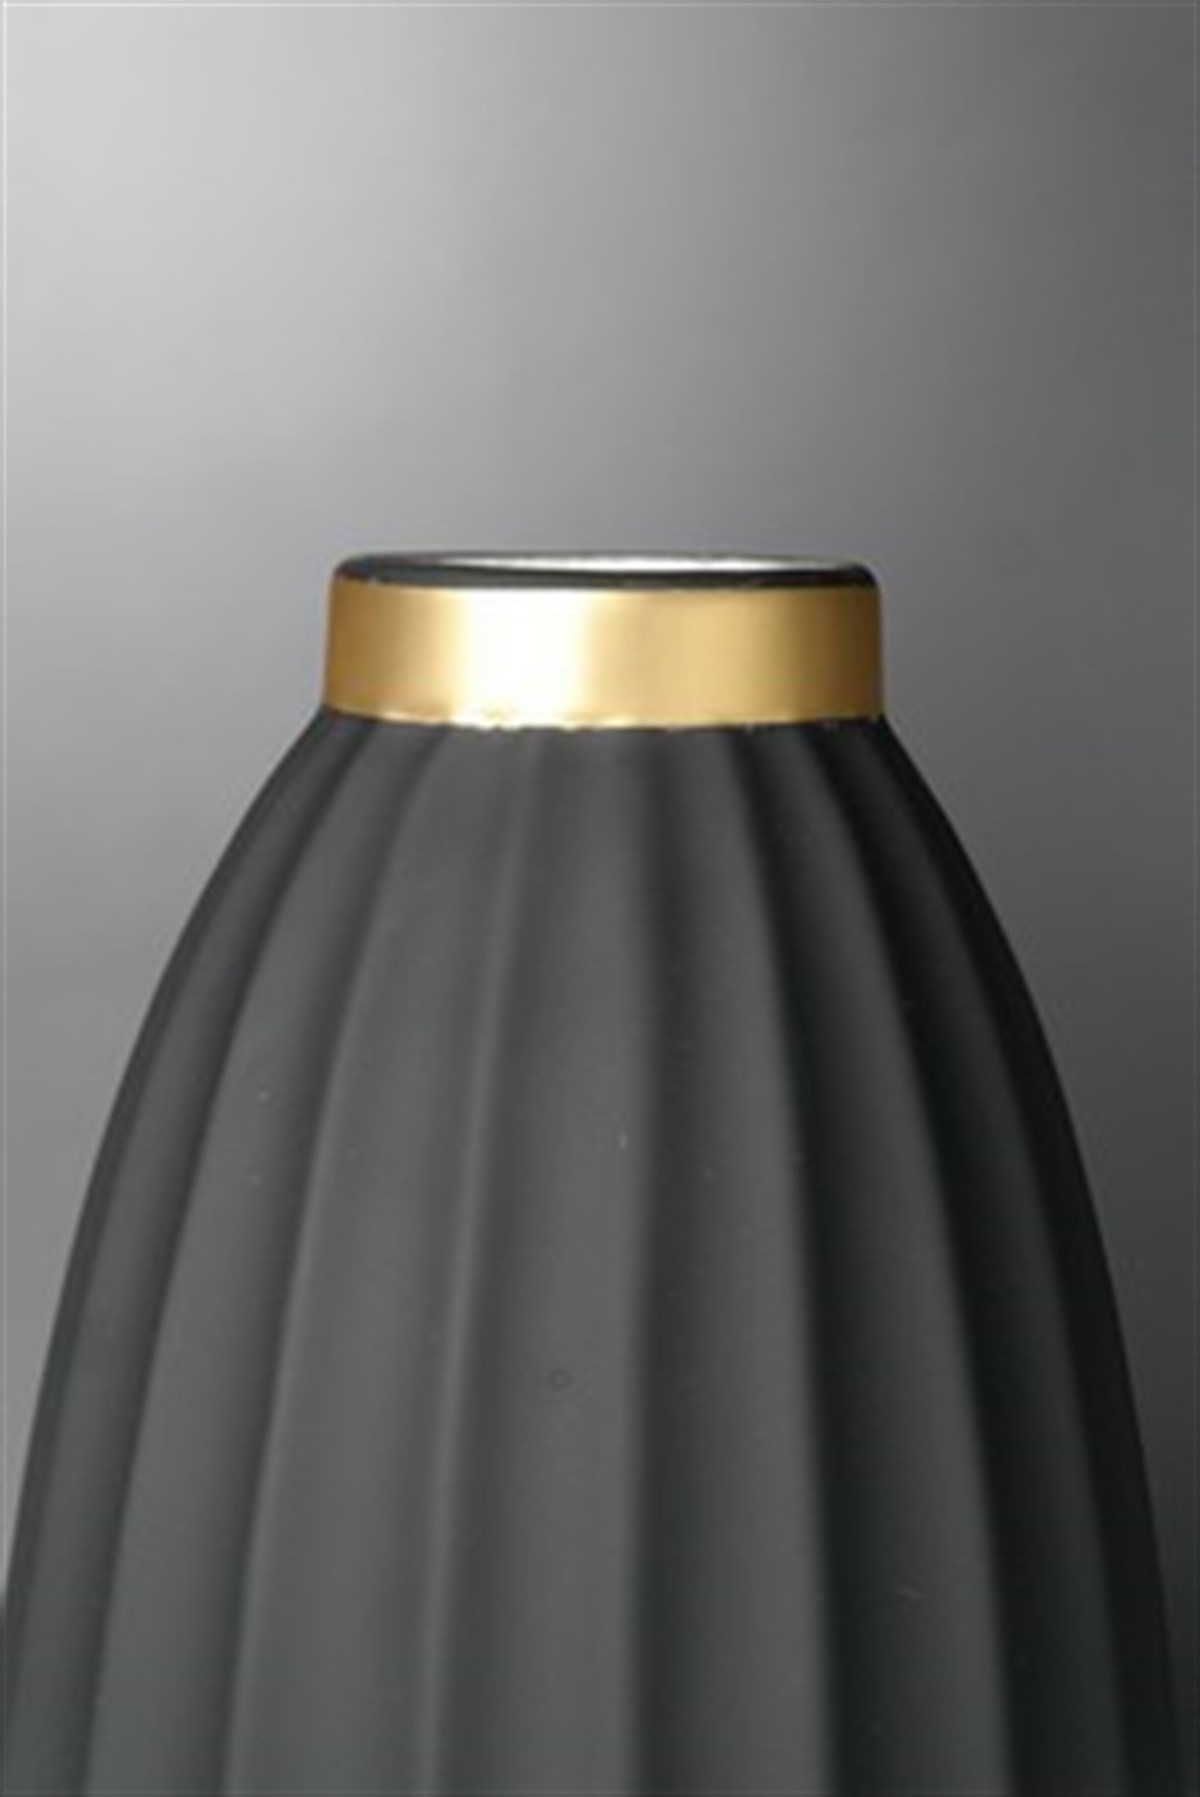 Mat Siyah Gold Detaylı Seramik Vazo 24 Cm Fiyatları | Joy Home Accessories